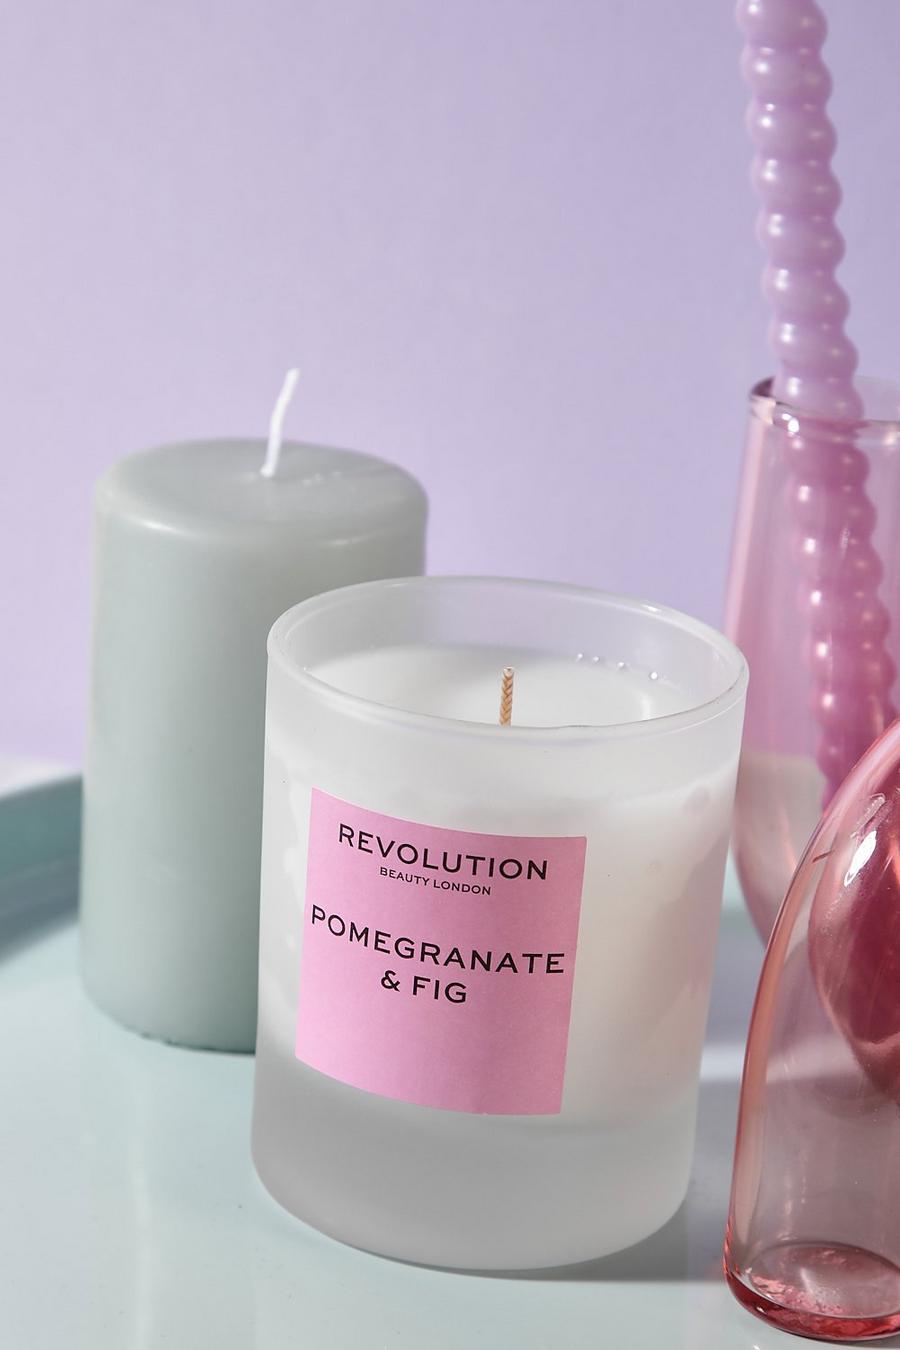 Revolution - Bougie parfumée - Grenade et figue, Pink rose